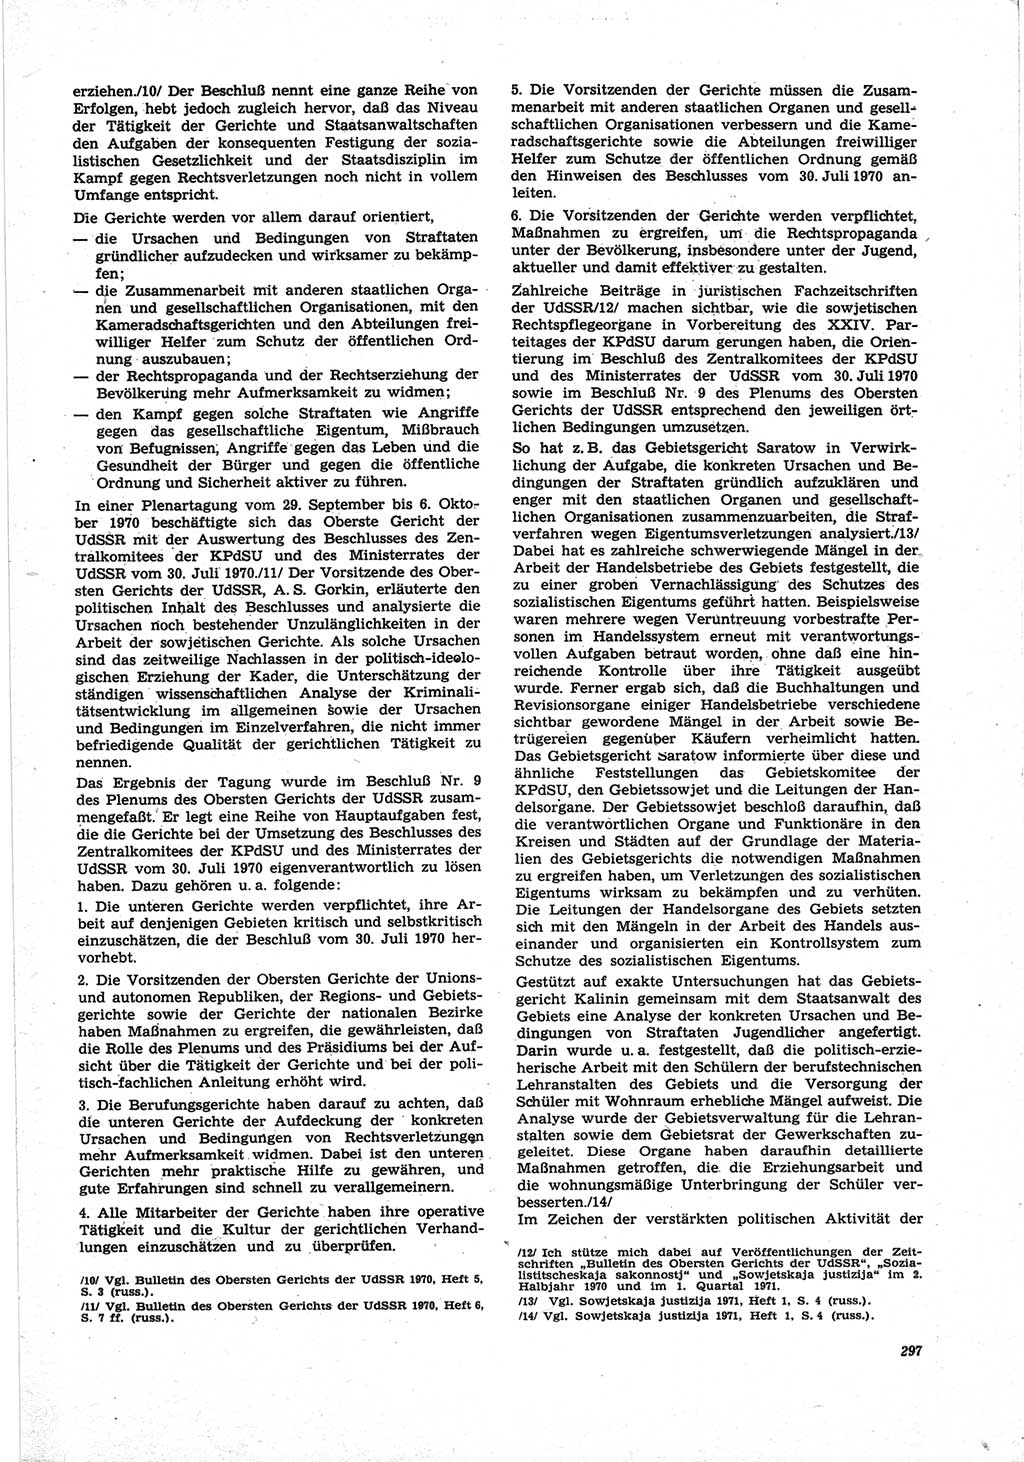 Neue Justiz (NJ), Zeitschrift für Recht und Rechtswissenschaft [Deutsche Demokratische Republik (DDR)], 25. Jahrgang 1971, Seite 297 (NJ DDR 1971, S. 297)